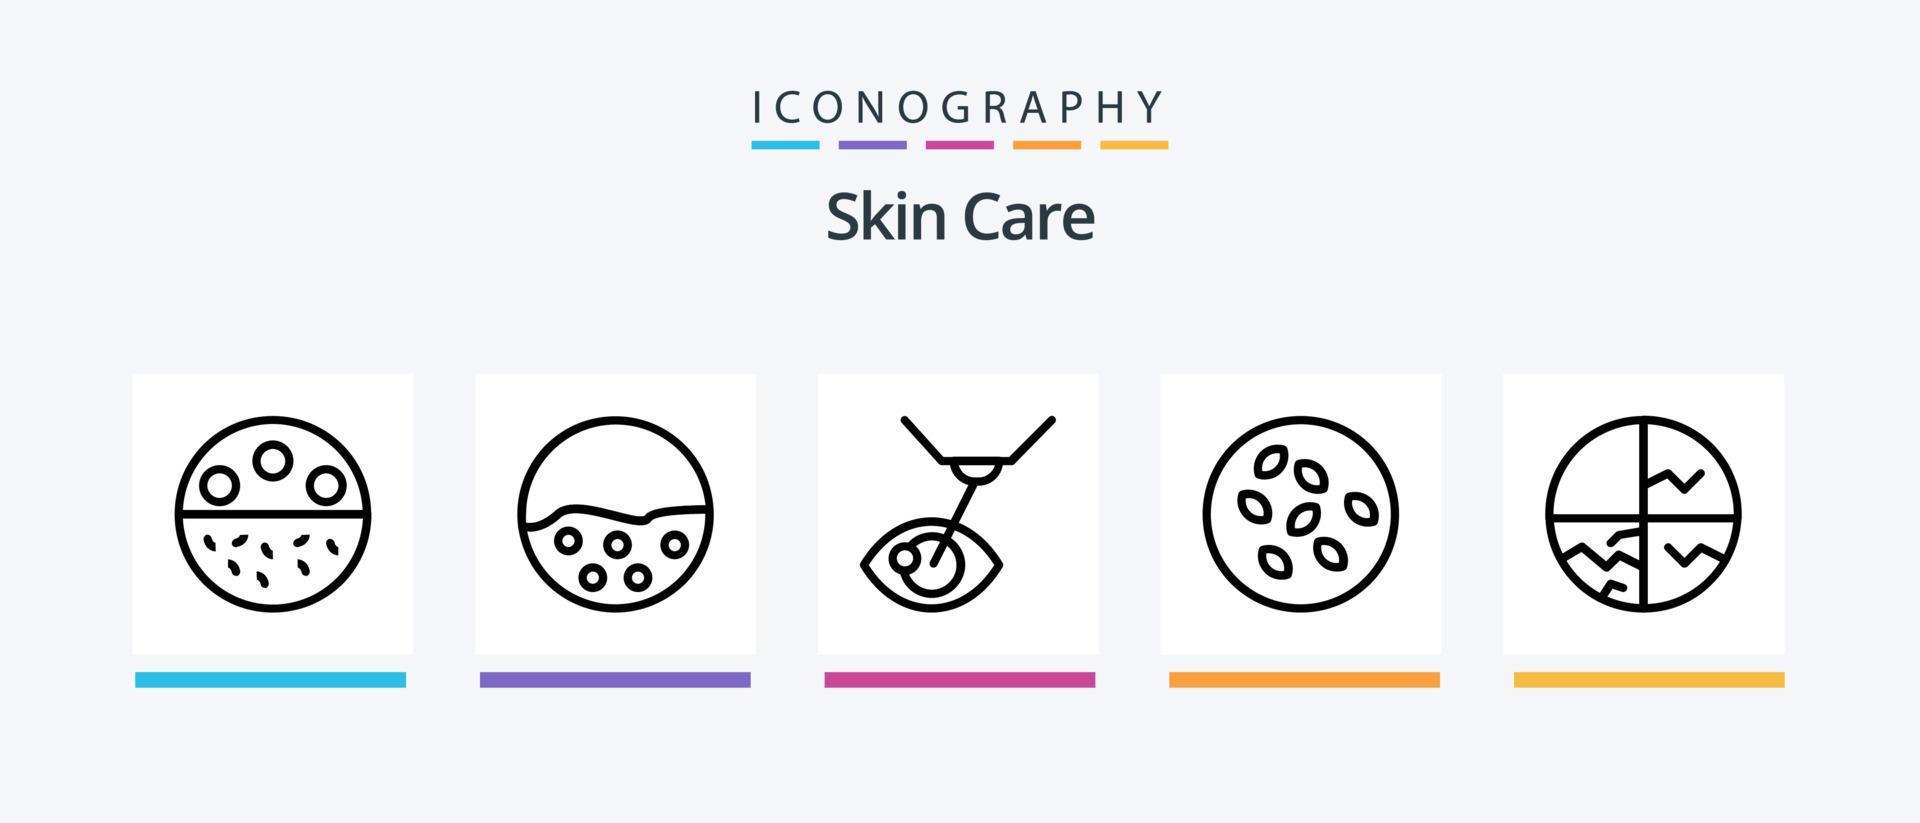 skin line 5 icon pack incluindo pele seca. seamus. pele. sementes de Sesamo. sementes. design de ícones criativos vetor